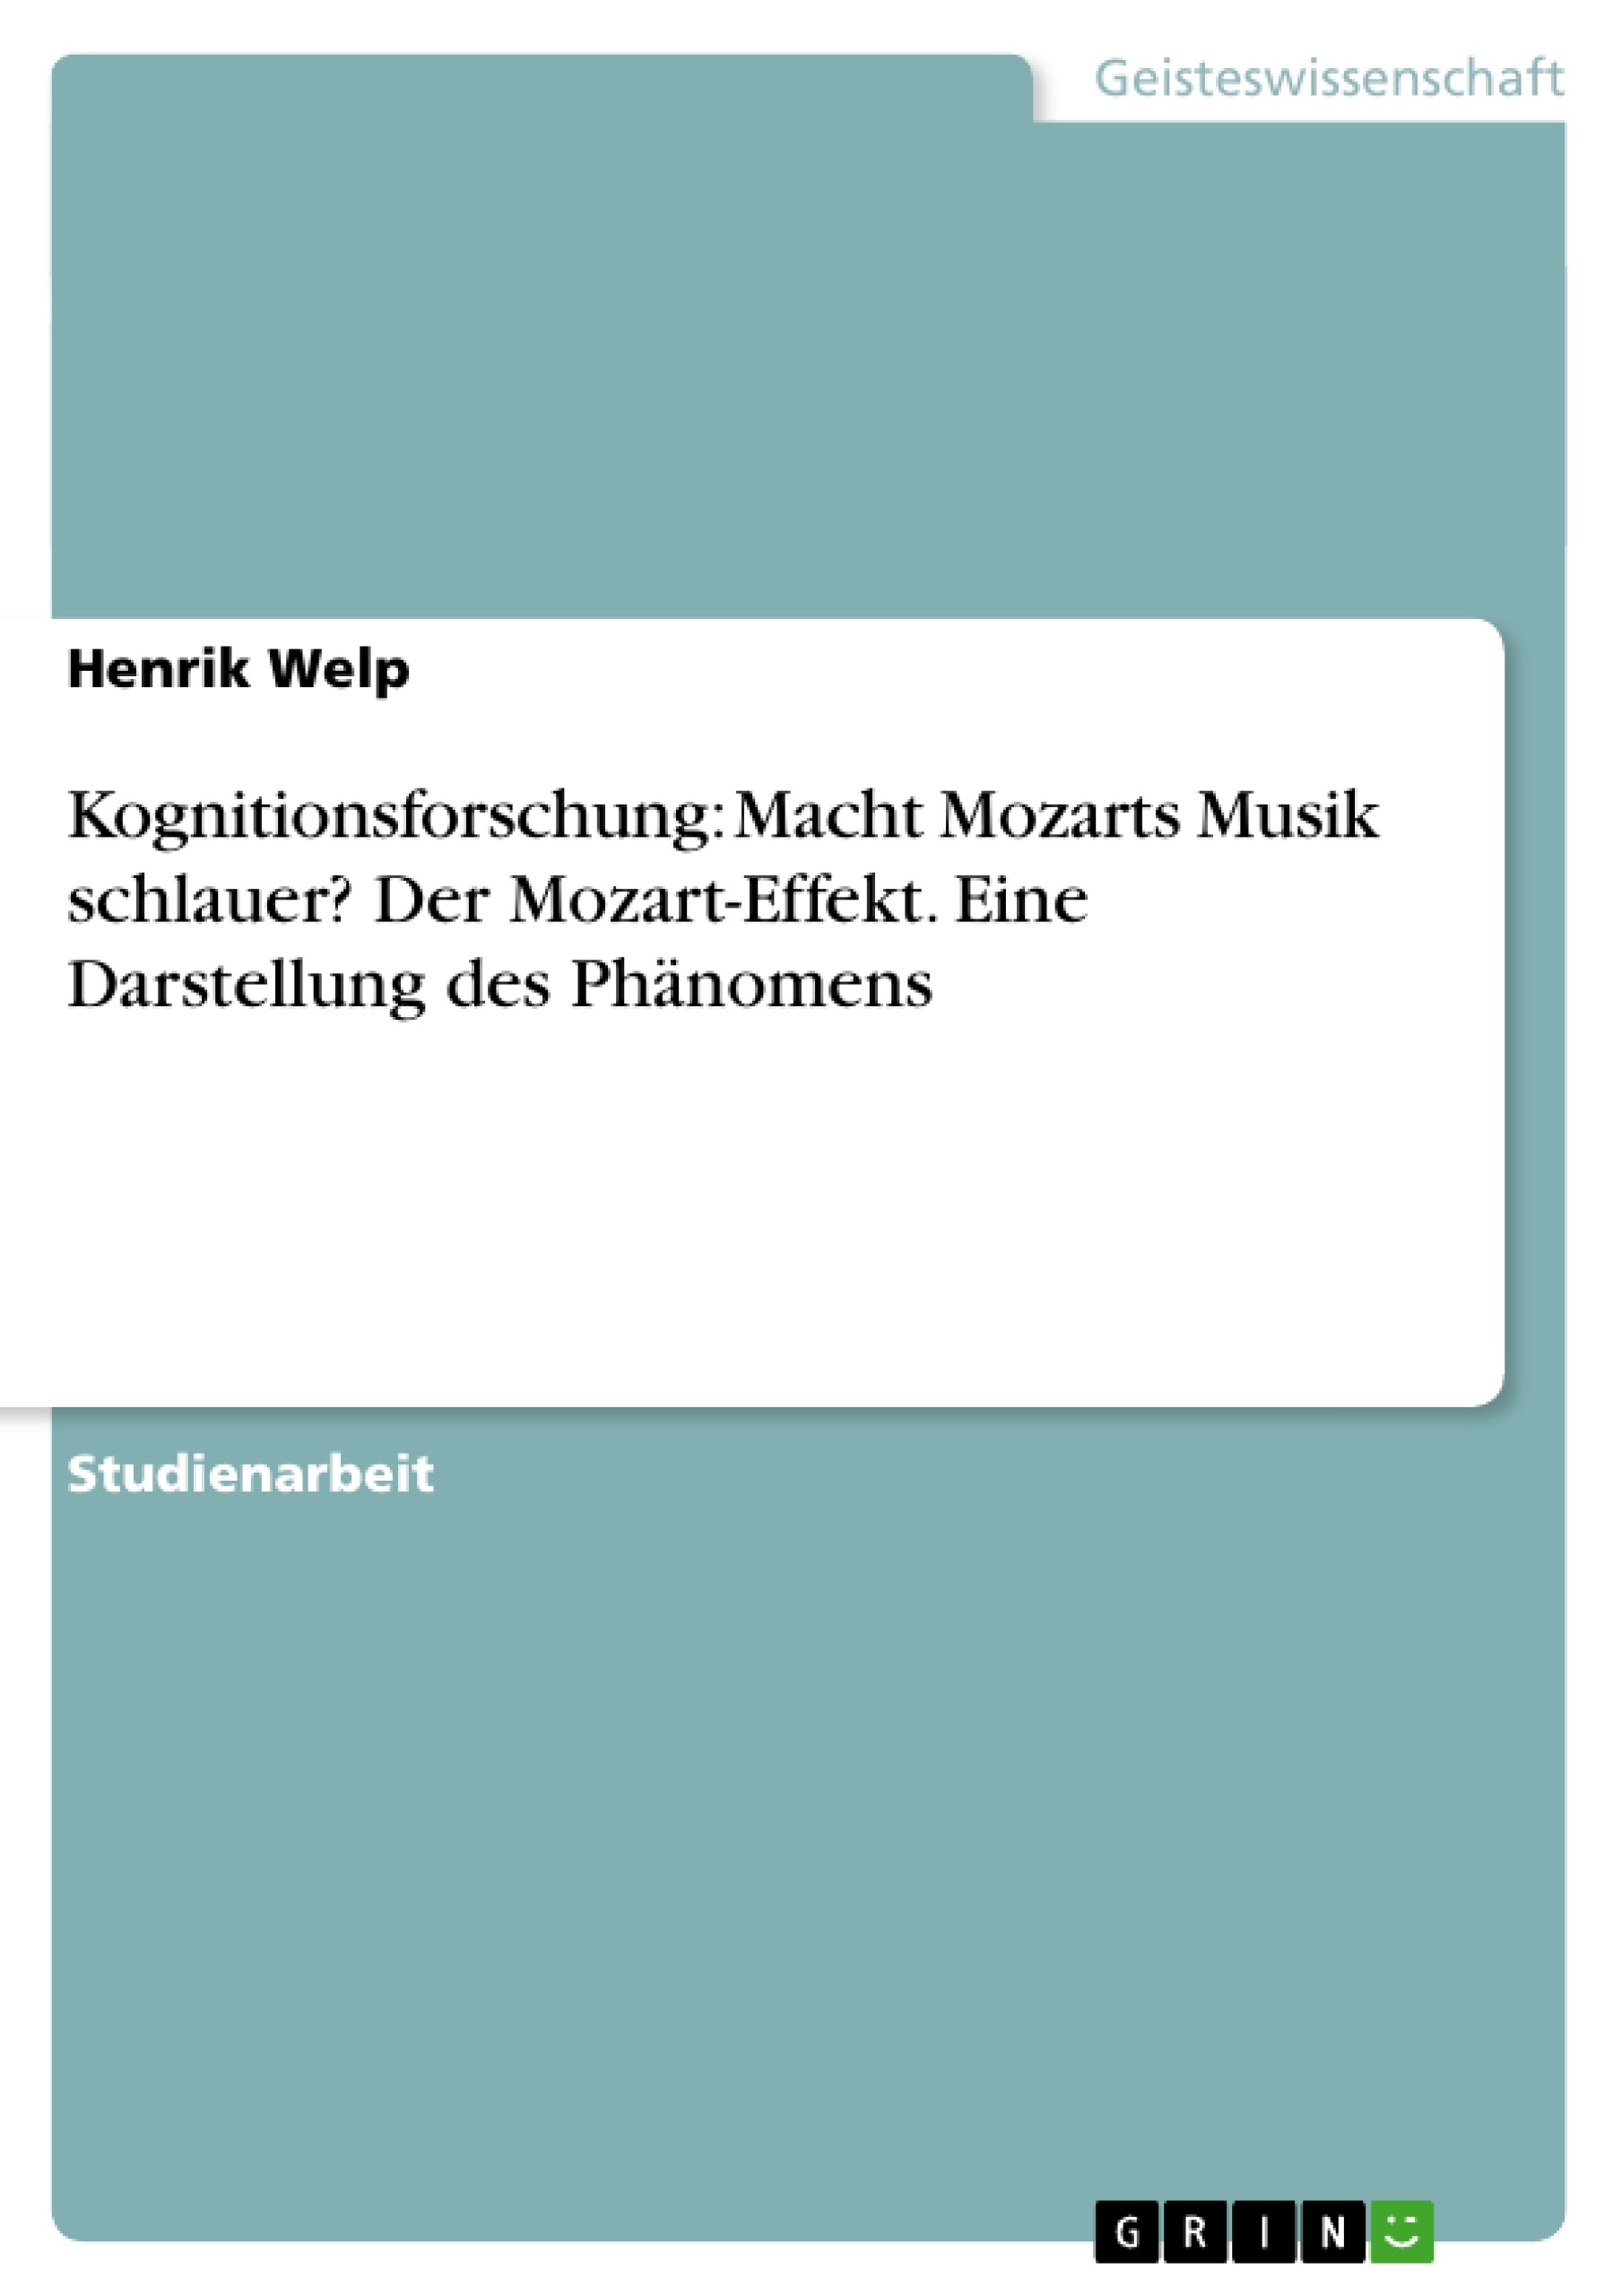 Título: Kognitionsforschung: Macht Mozarts Musik schlauer? Der Mozart-Effekt. Eine Darstellung des Phänomens